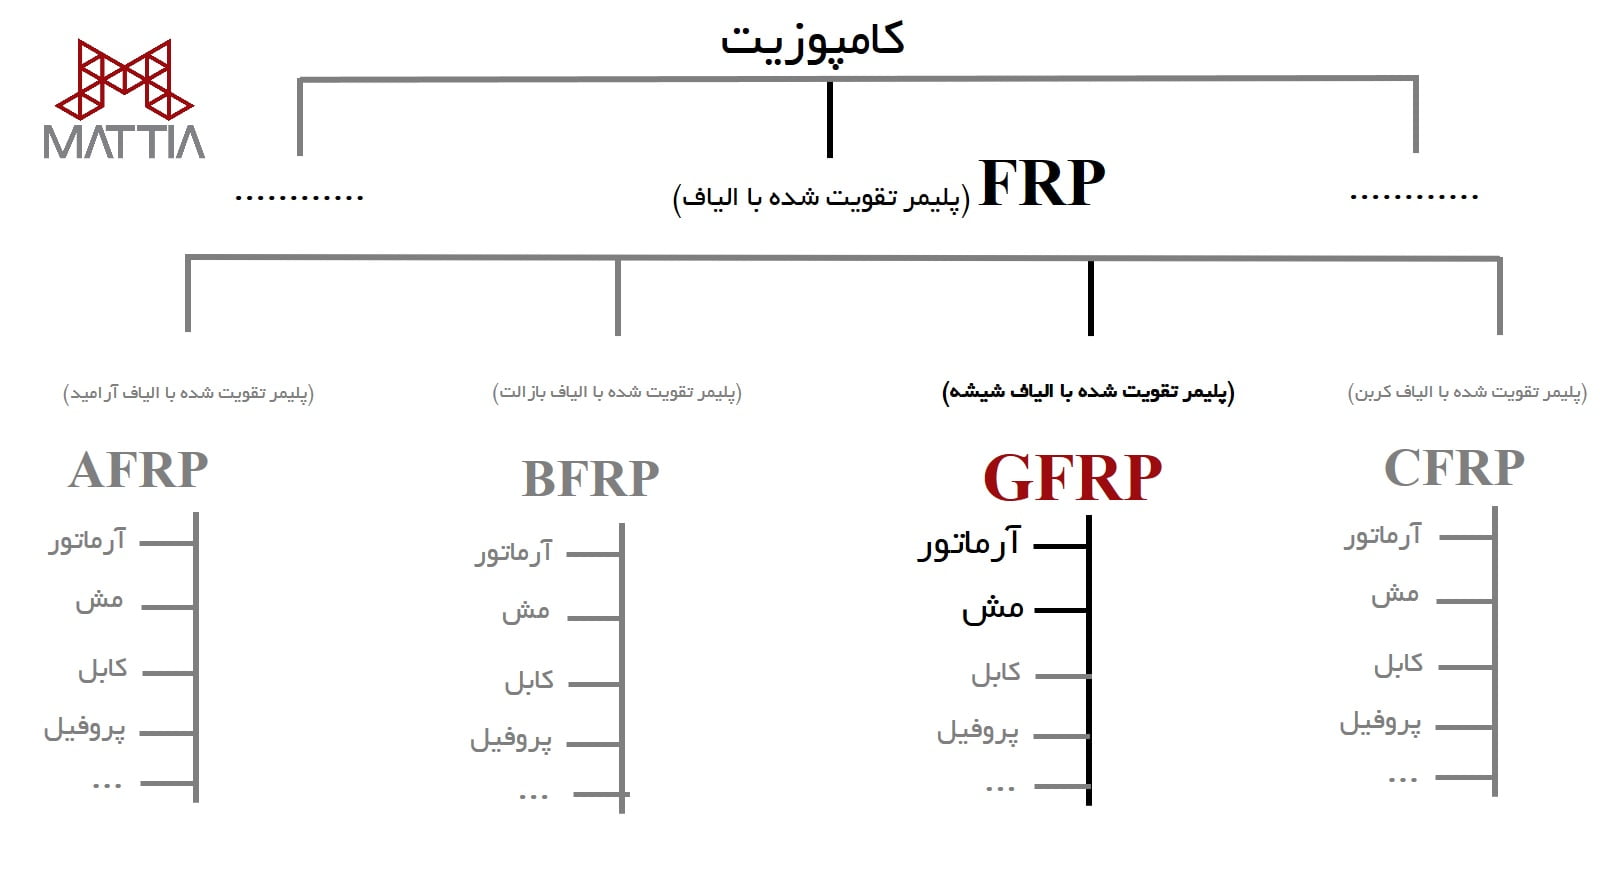 نمودار درختی کلیه محصولات FRP و جایگاه محصولات GFRP